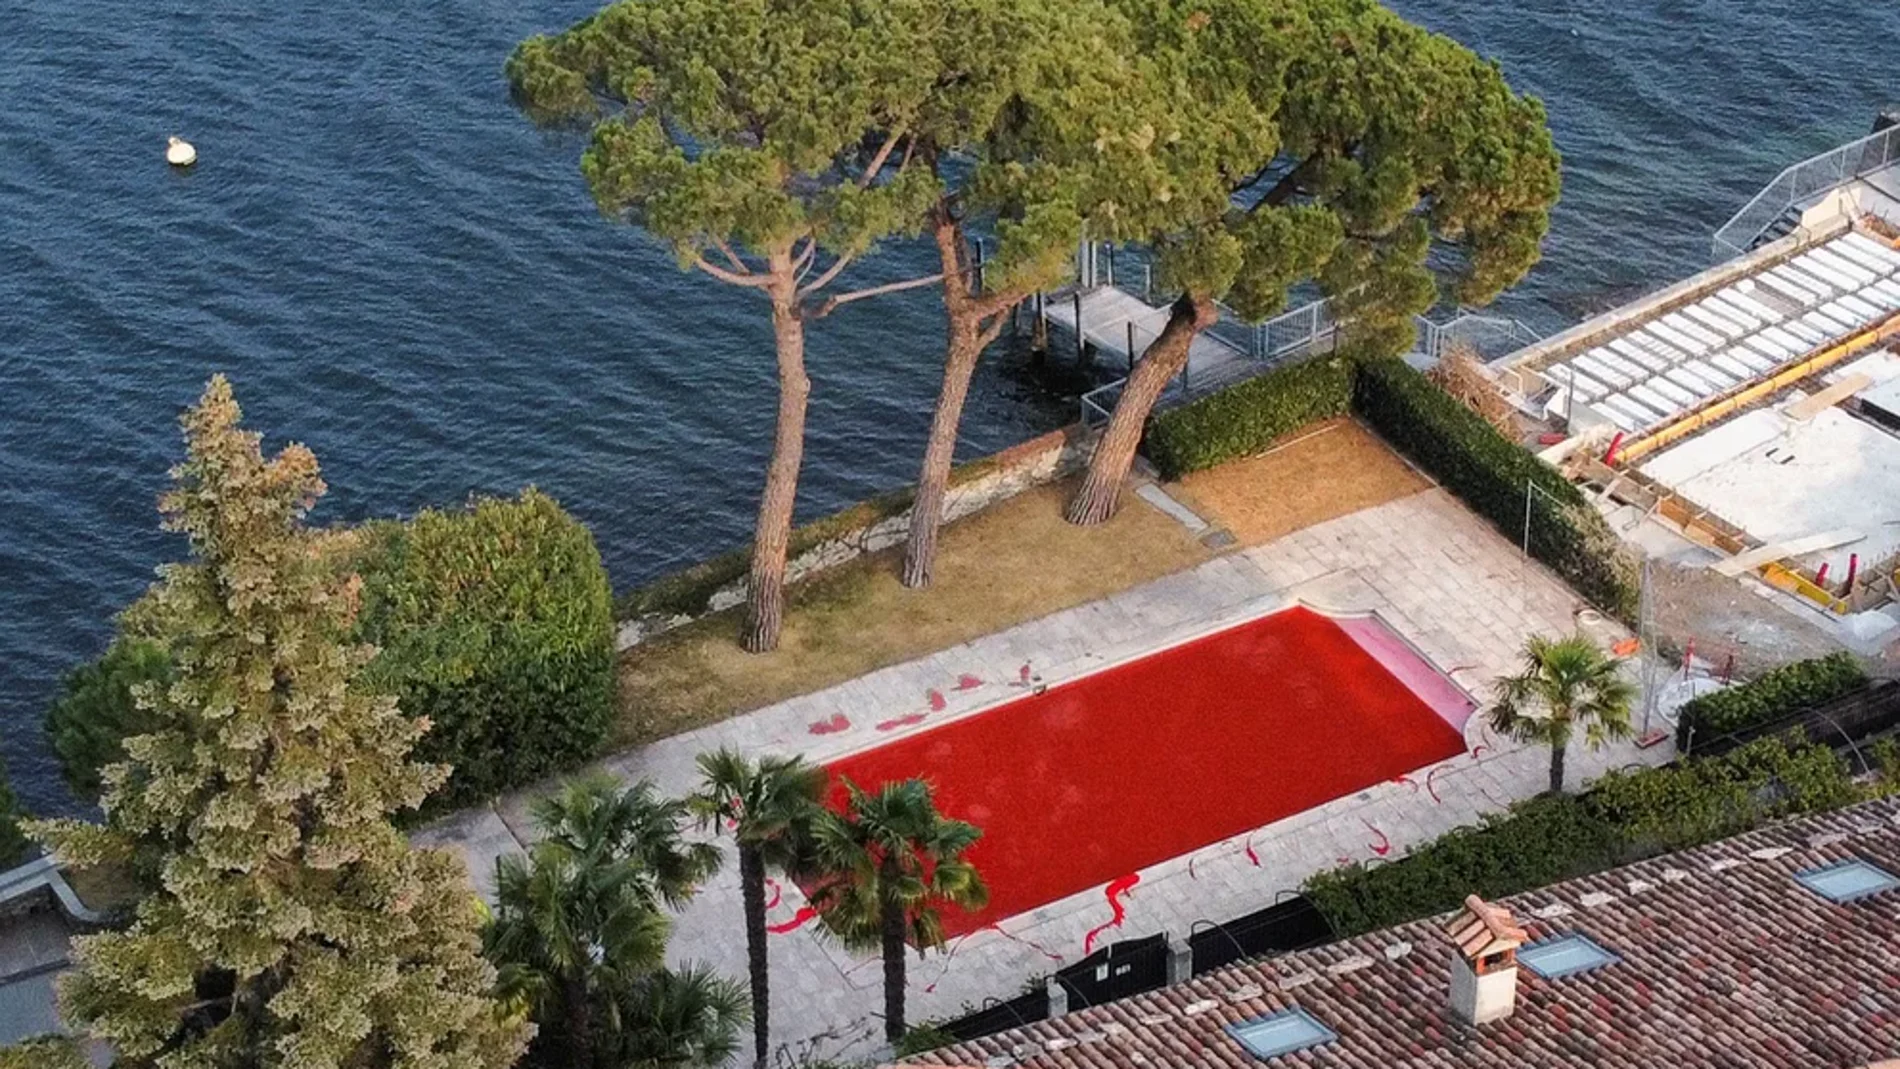 La lujosa mansión de Vladimir Solovyev, conocido por ser presentador de la televisión rusa y acusado de propagandista del Kremlin, amaneció con la palabra “asesino” en la entrada y su piscina de color rojo